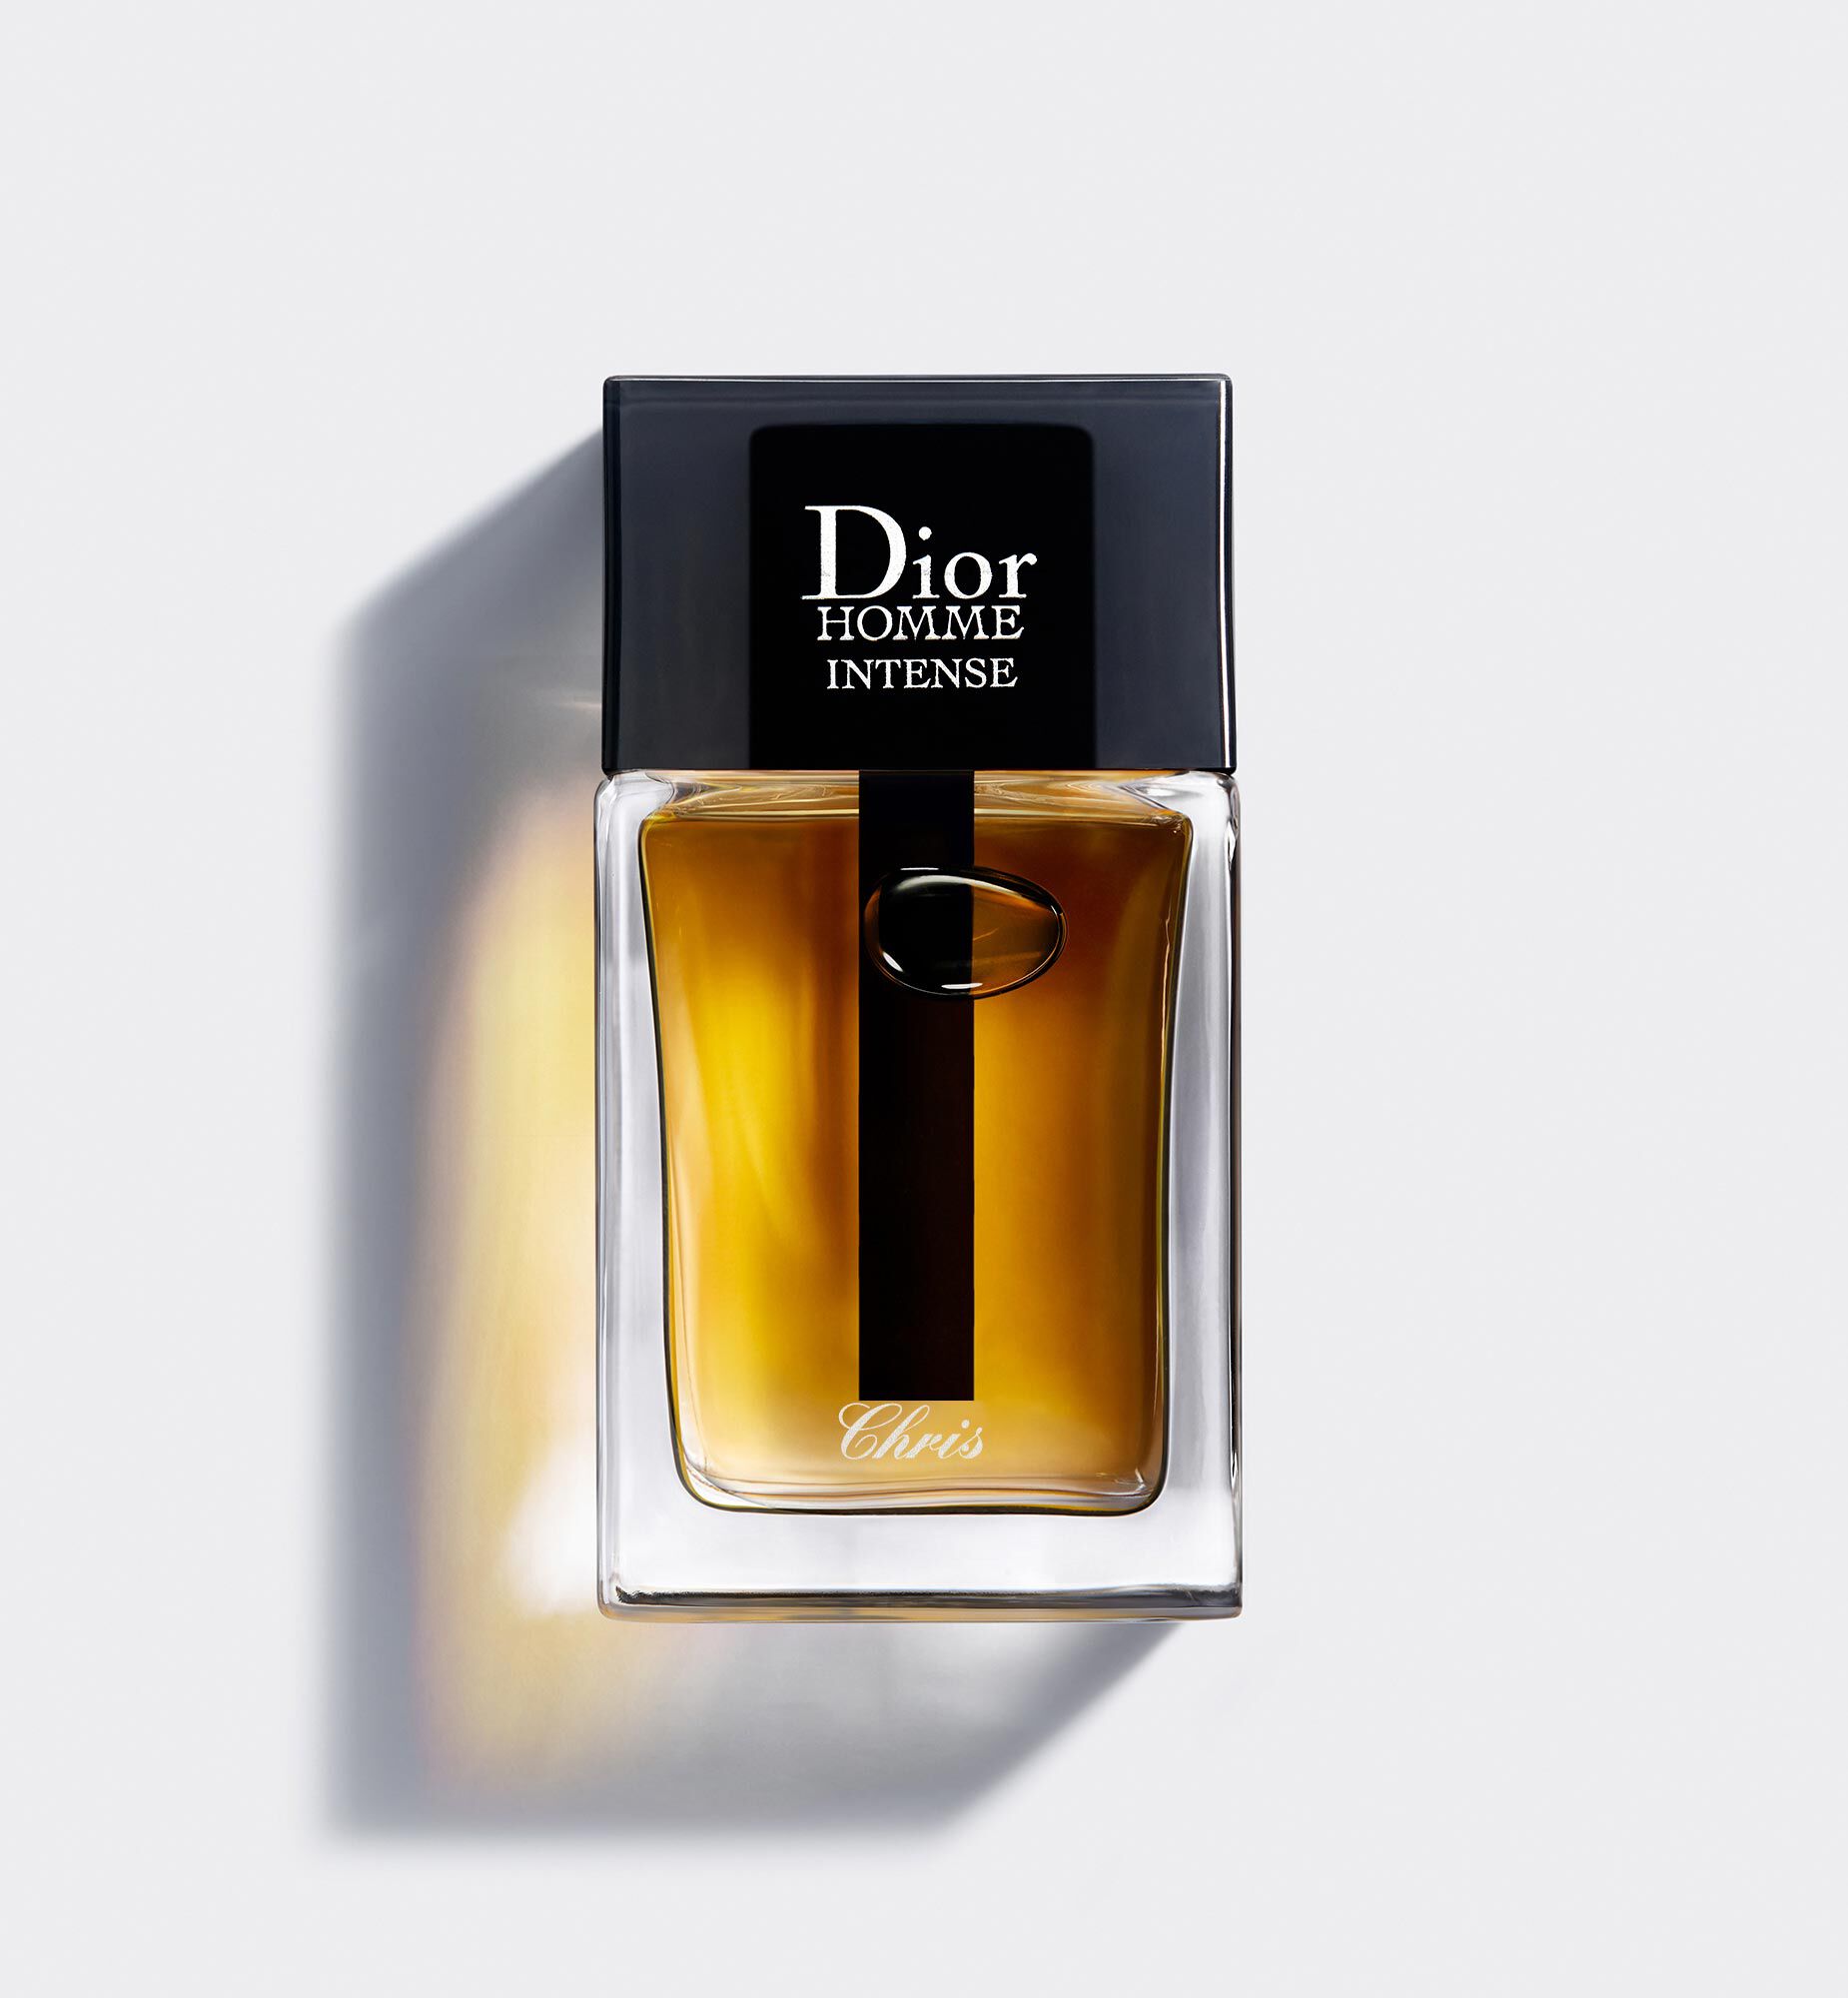 Concentratie overschot japon Dior Homme Intense Eau de Parfum | DIOR